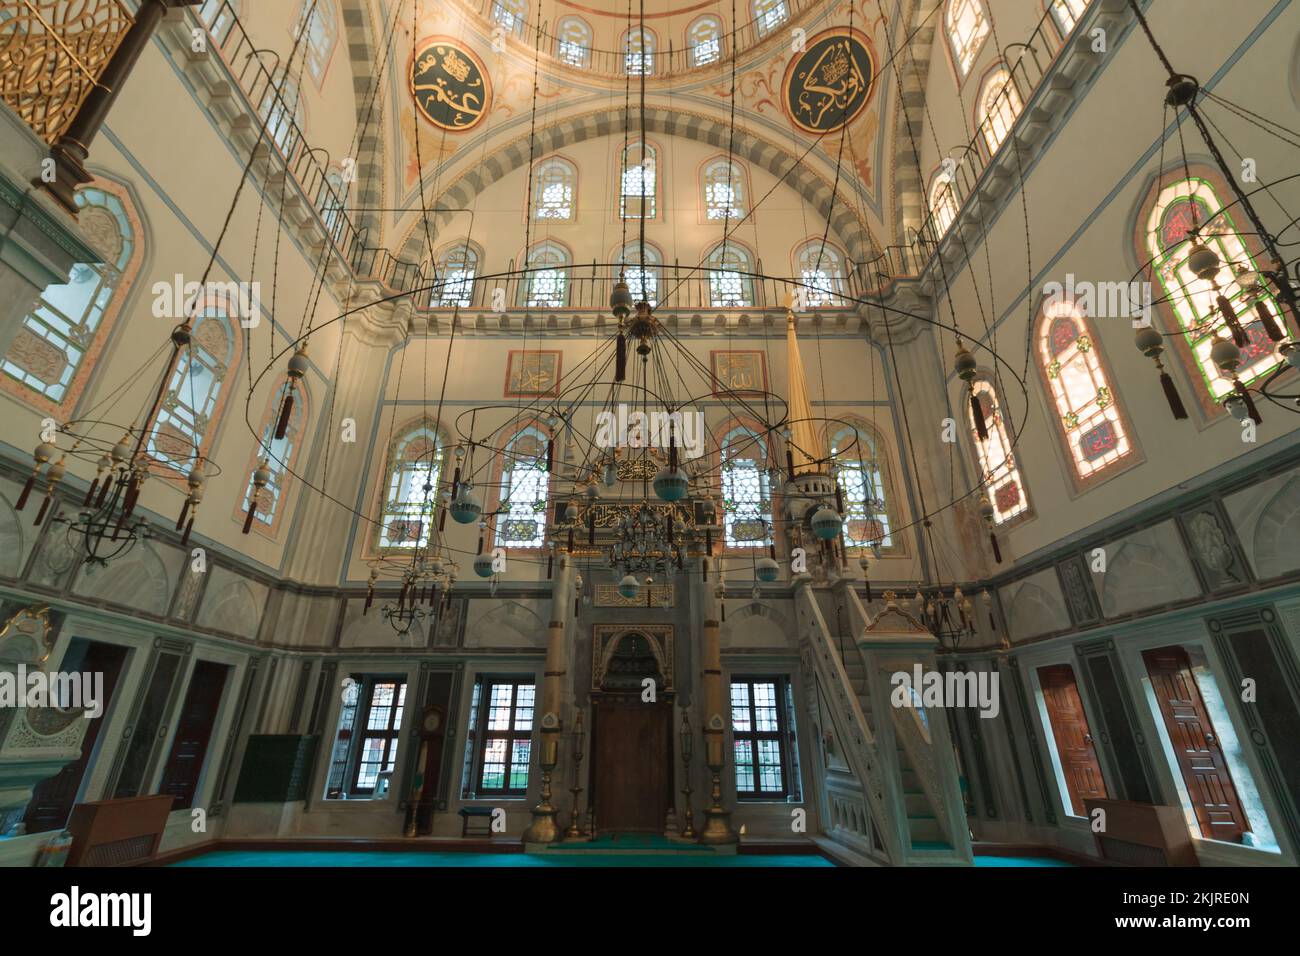 Interno della moschea di Ayazma. Foto di sfondo dell'architettura tardo ottomana. Istanbul Turchia - 9.24.2022 Foto Stock